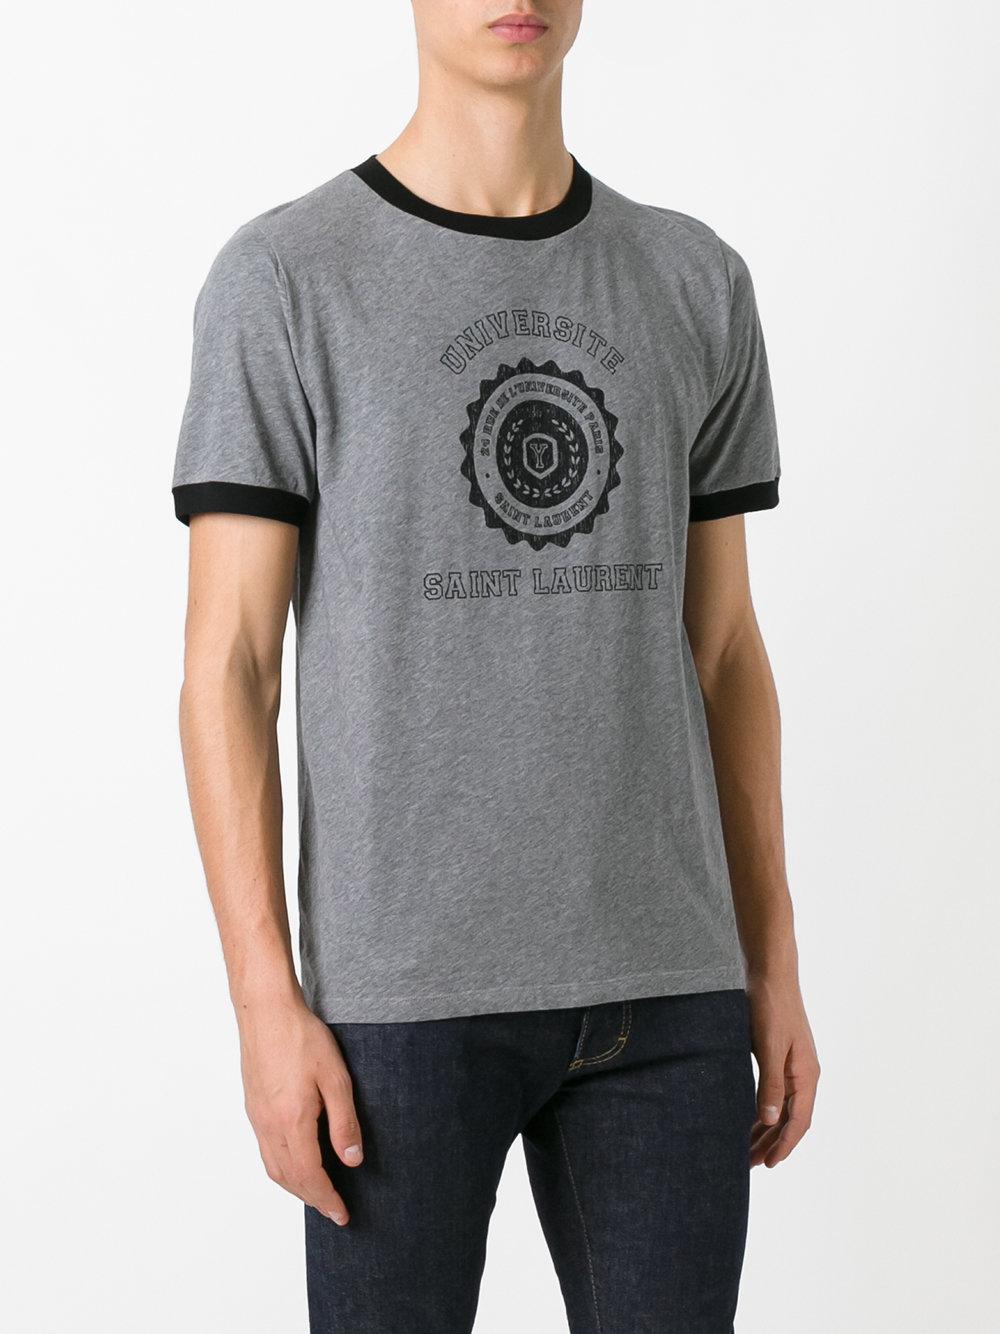 Saint Laurent Cotton Université Ringer T-shirt in Grey (Gray) for Men - Lyst